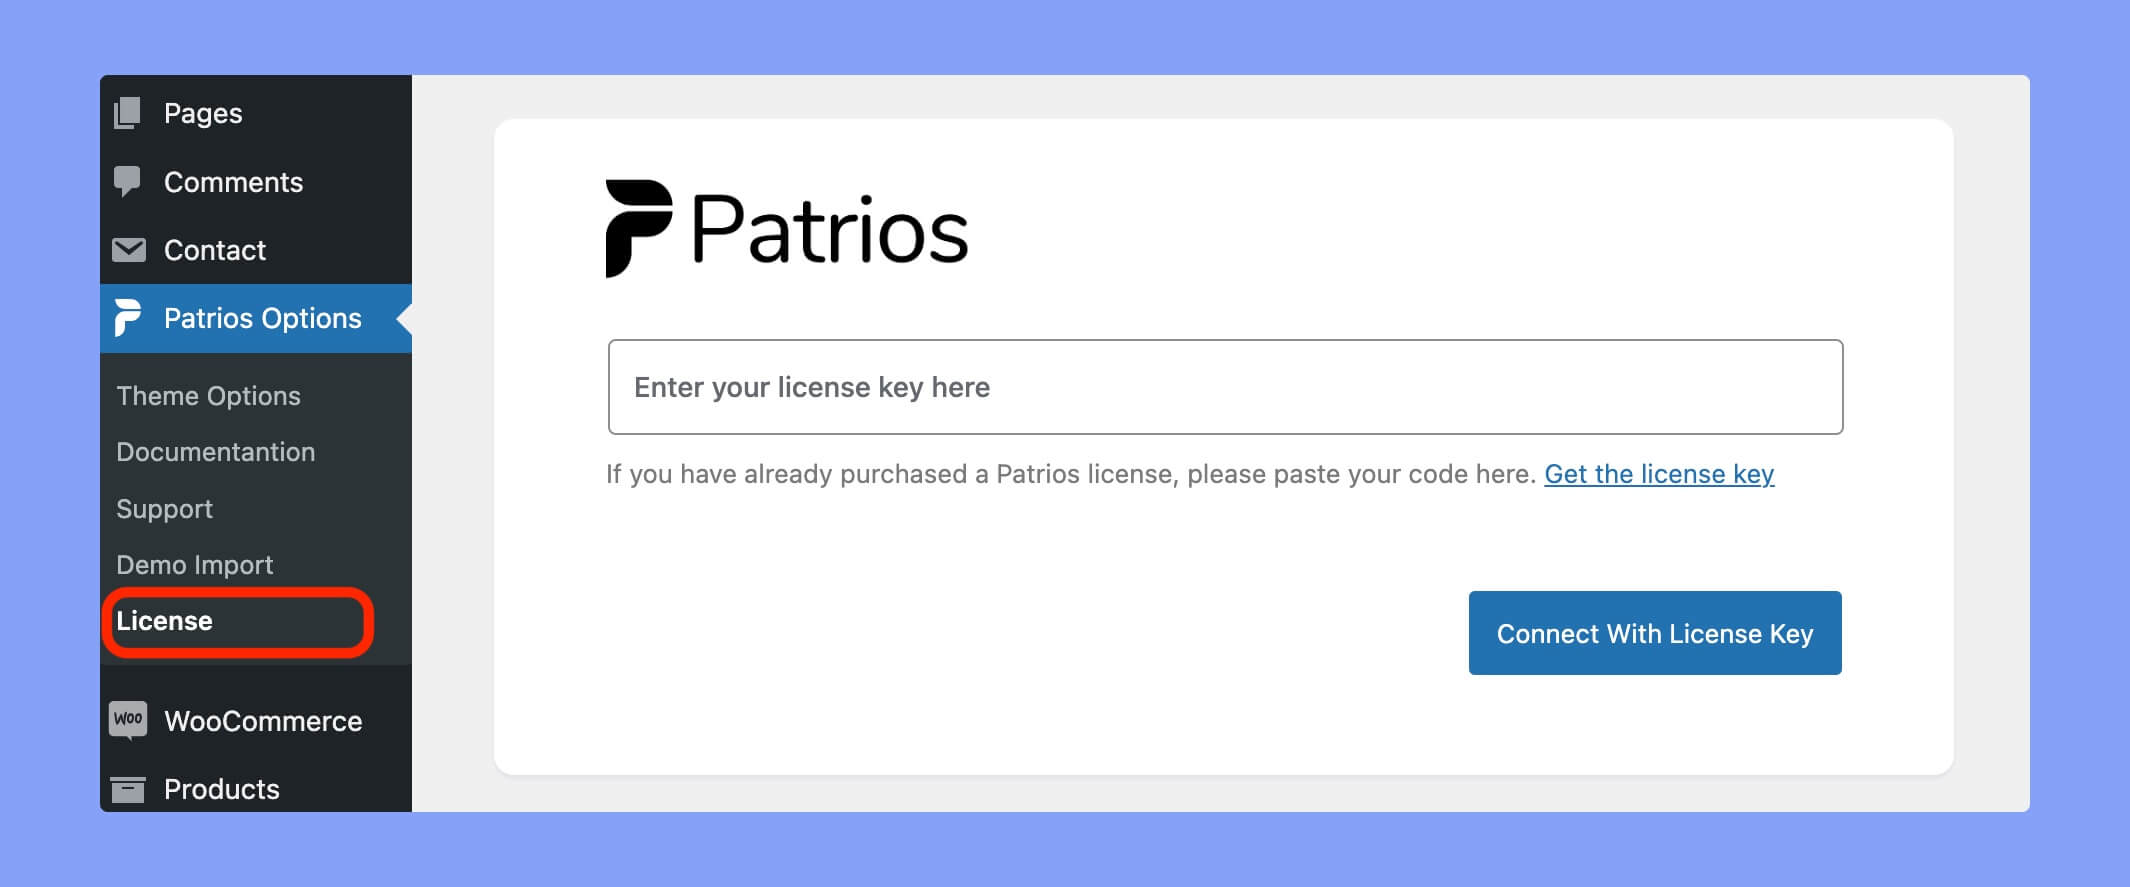 Patrios license page